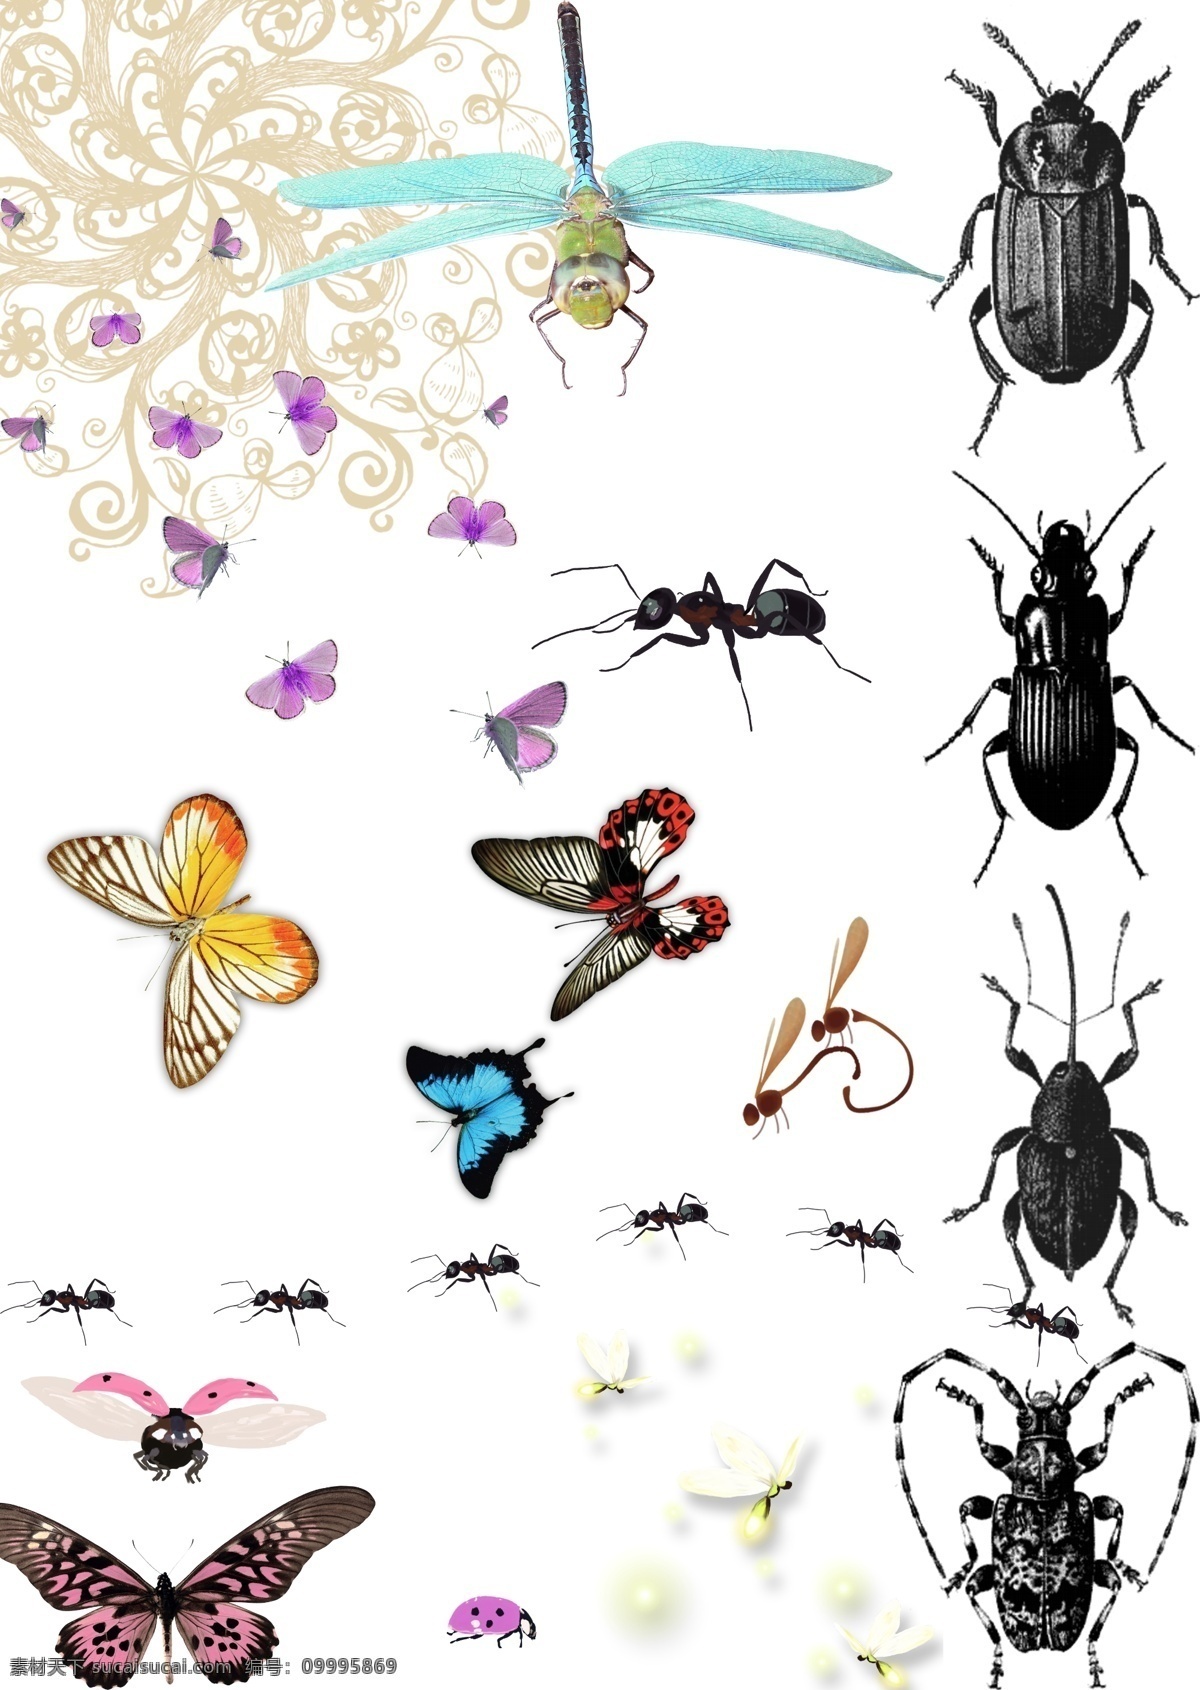 昆虫集 蝴蝶 蜻蜓 蚂蚁 萤火虫 甲虫 瓢虫 粉蝶 动物世界 昆虫 设计素材 分层 源文件